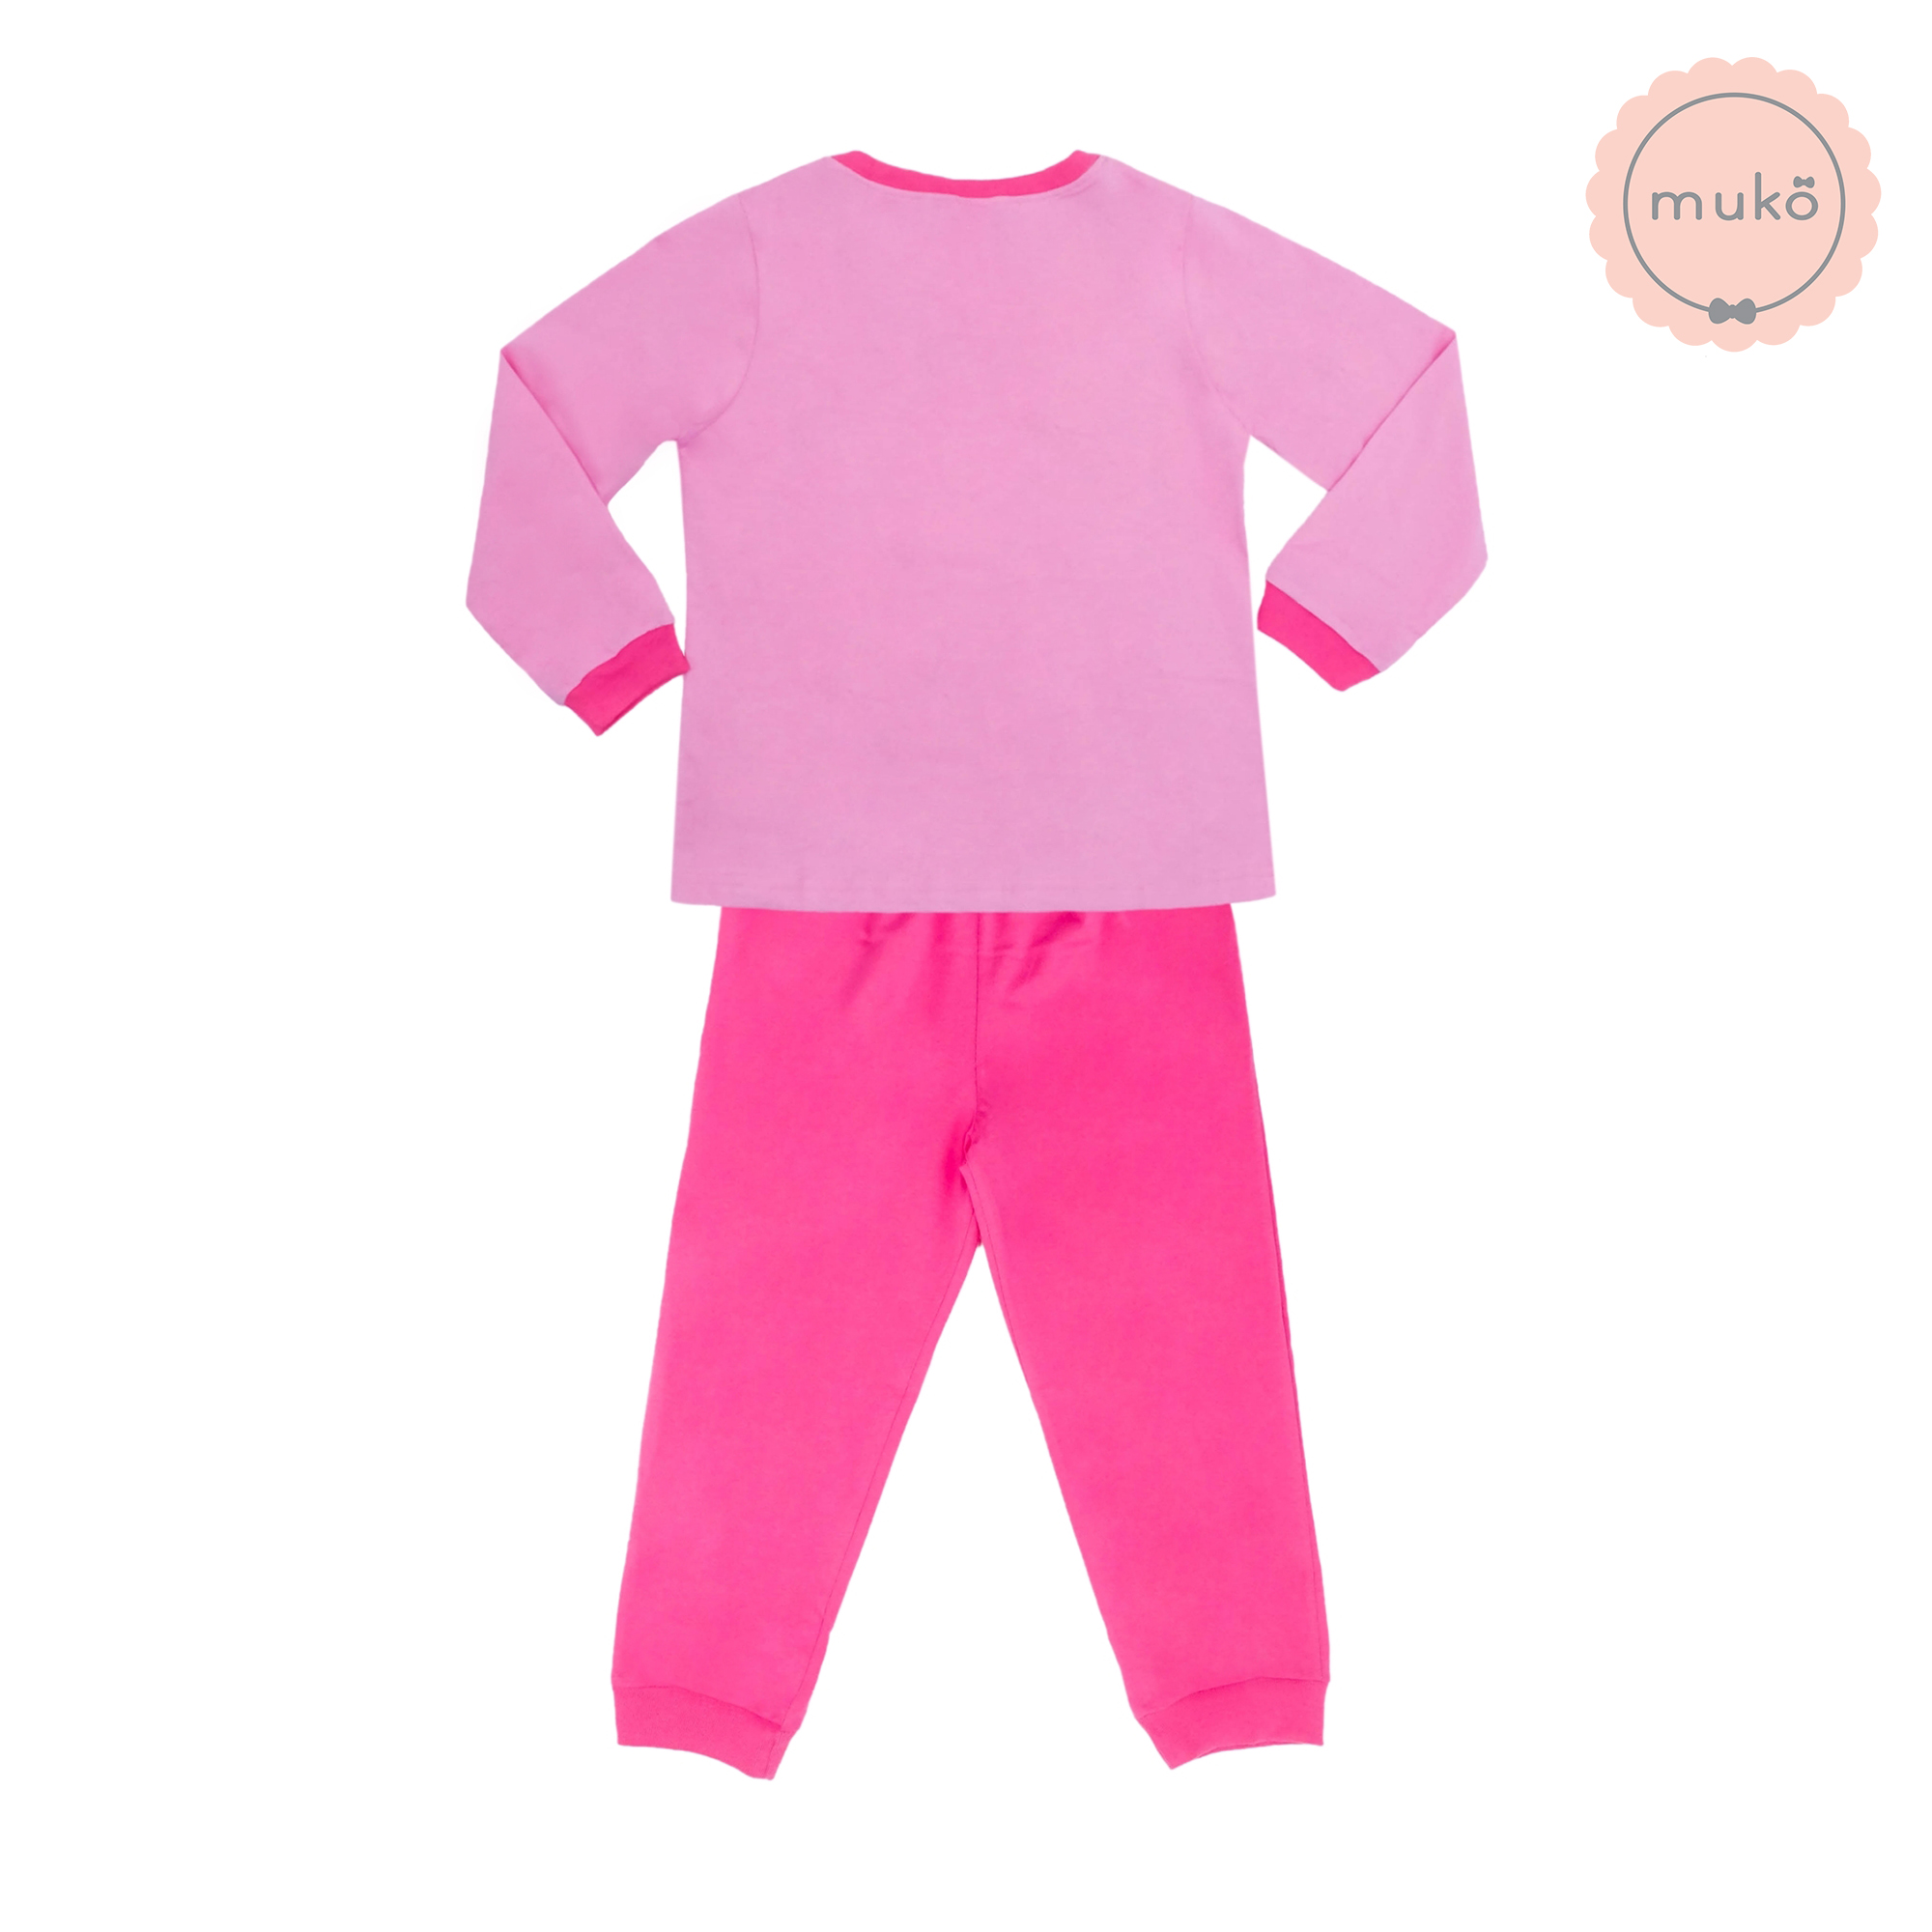 ชุดเด็ก 6-7 ขวบ แขนยาว-ขายาว (Size L) DPC127-03-XL-Pink L ลาย เจ้าหญิงเบลล์ Belle (เสื้อชมพูกางเกงชมพูเข้ม)